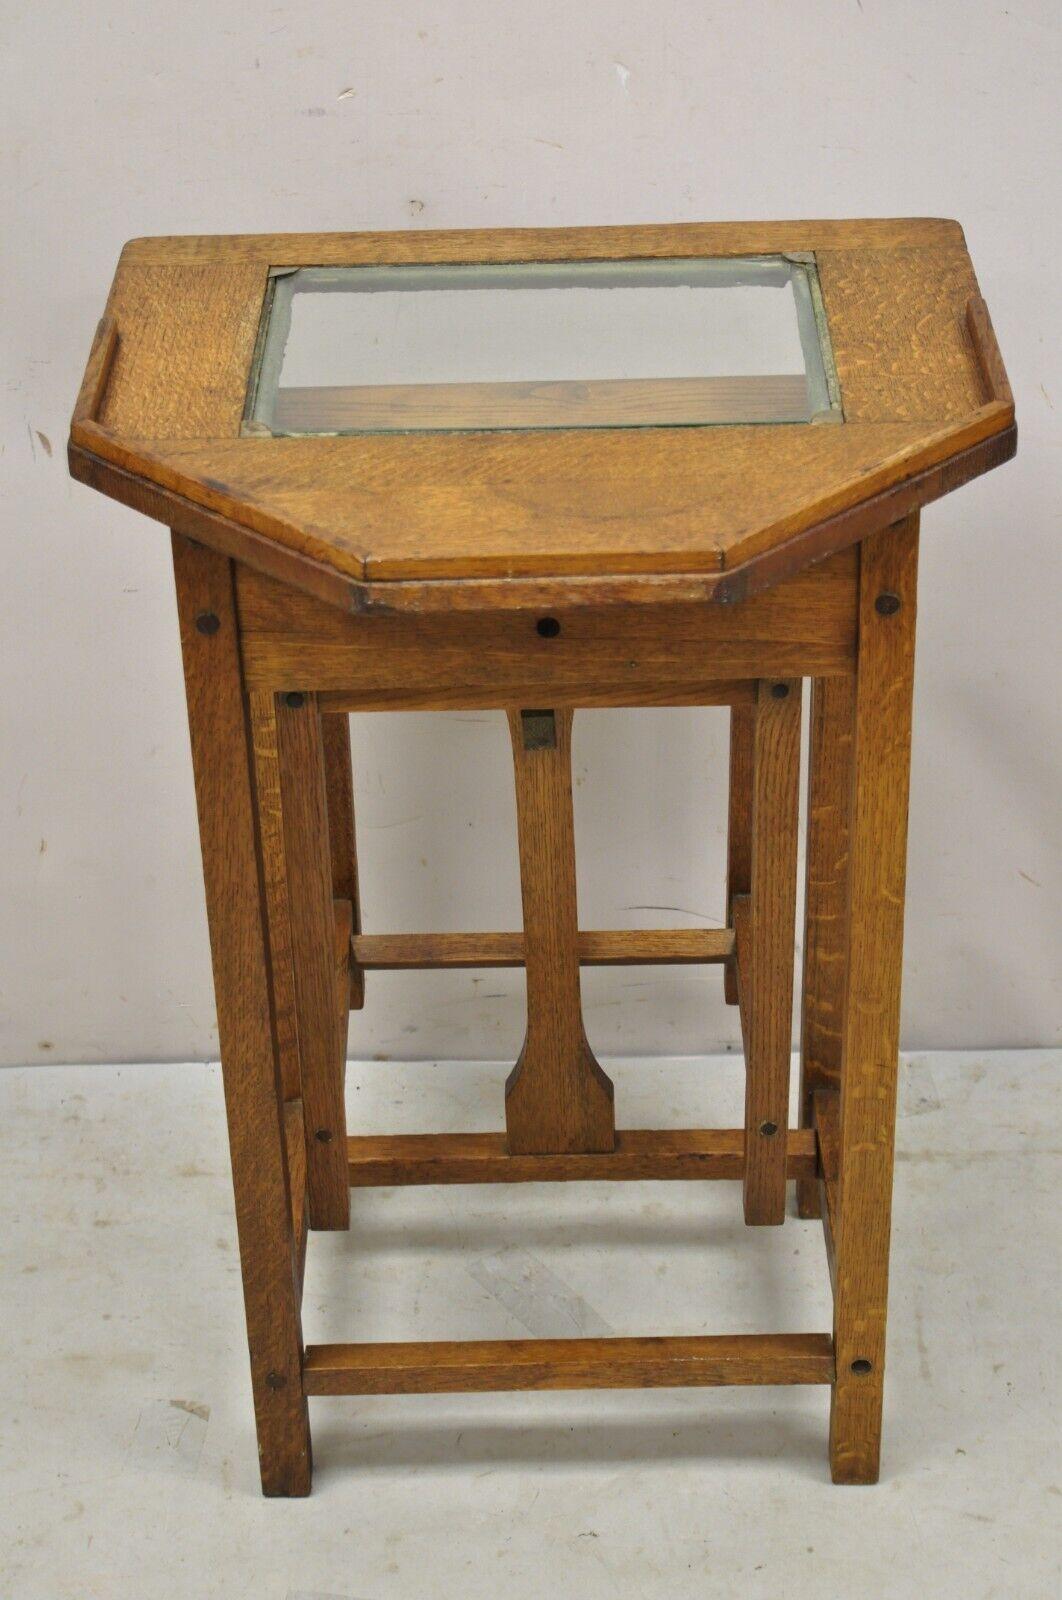 Antike H.T. Cushman Betumal Eichenholz Telefonständer Kleiner Kinderschreibtisch. Der Artikel verfügt über einen ausziehbaren Sitz, eine Glasplatte, ein Ablagefach am Ständer, eine solide Holzkonstruktion, eine schöne Holzmaserung, ein originales